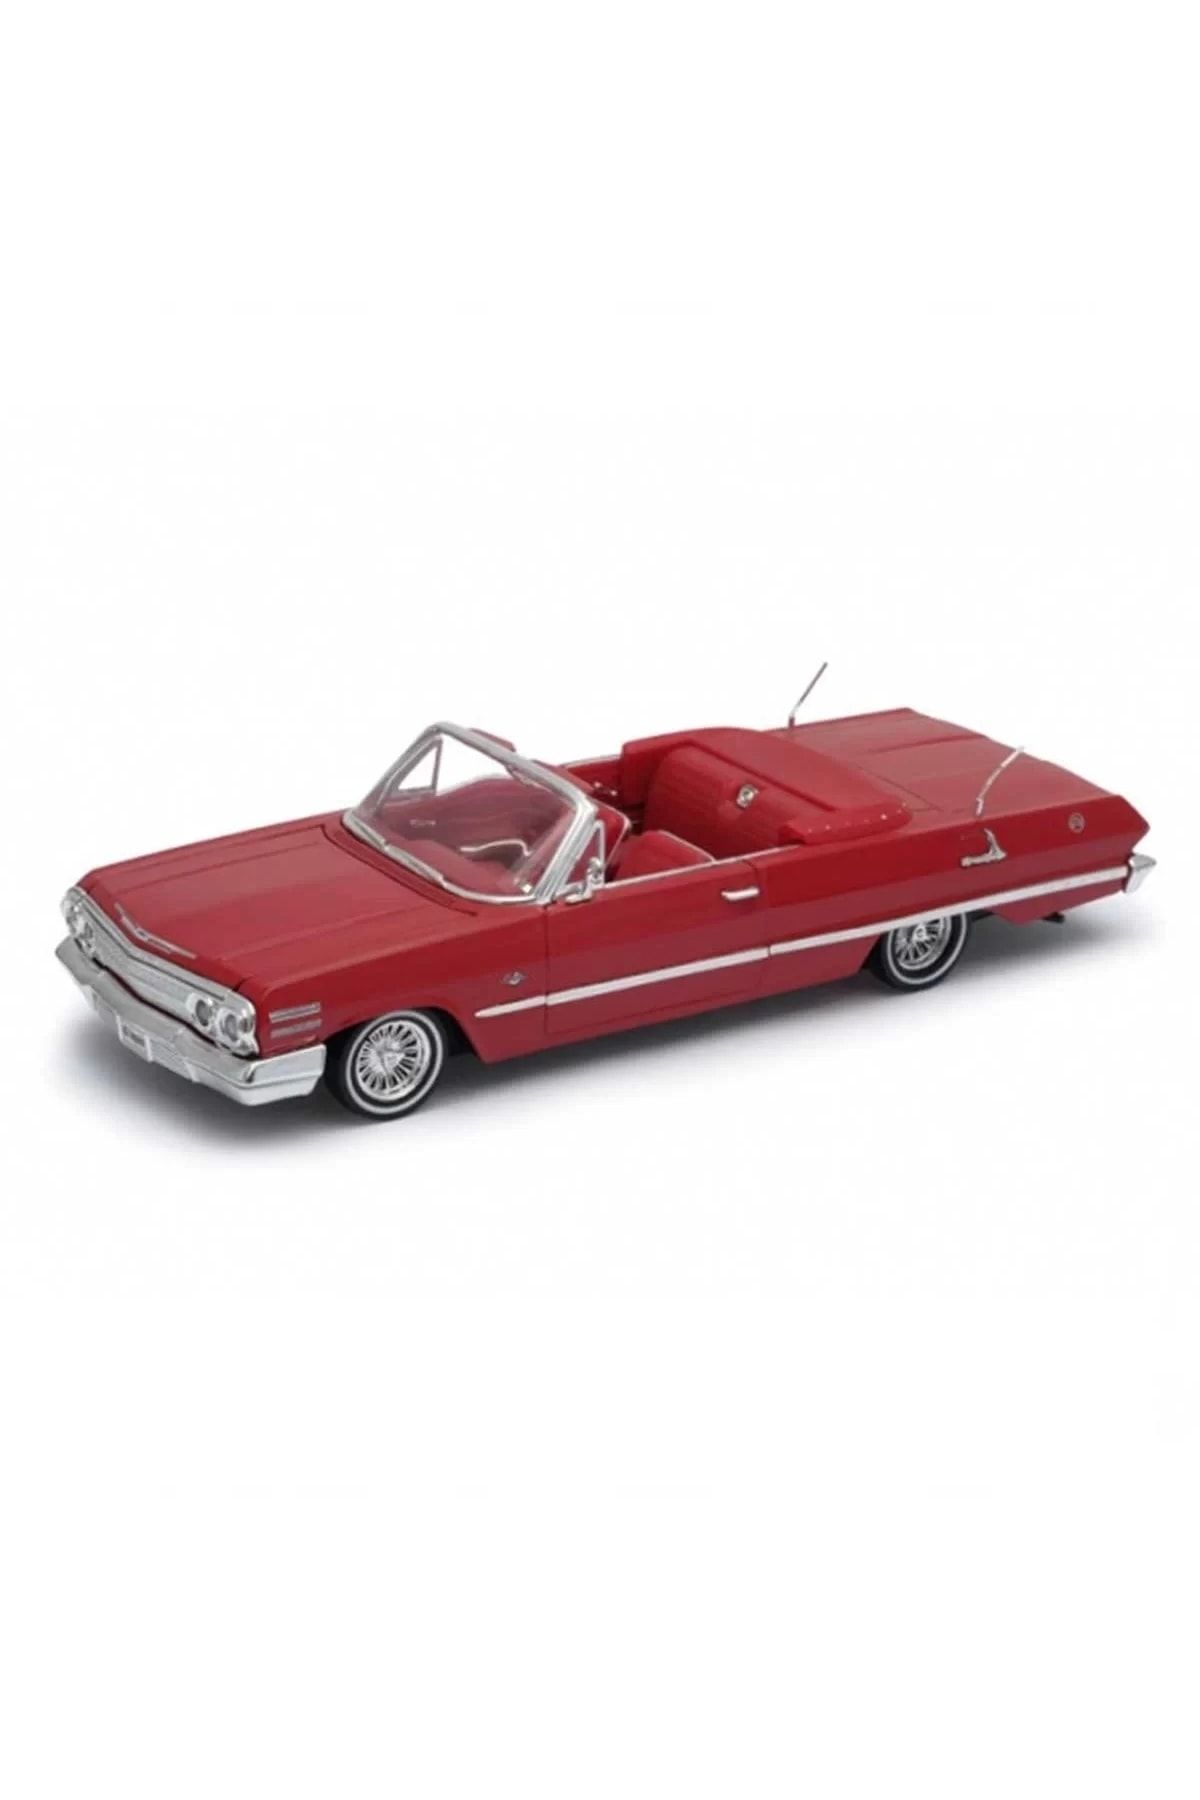 WELLY Chevrolet Impala 1963 1/24 Ölçek Kırmızı